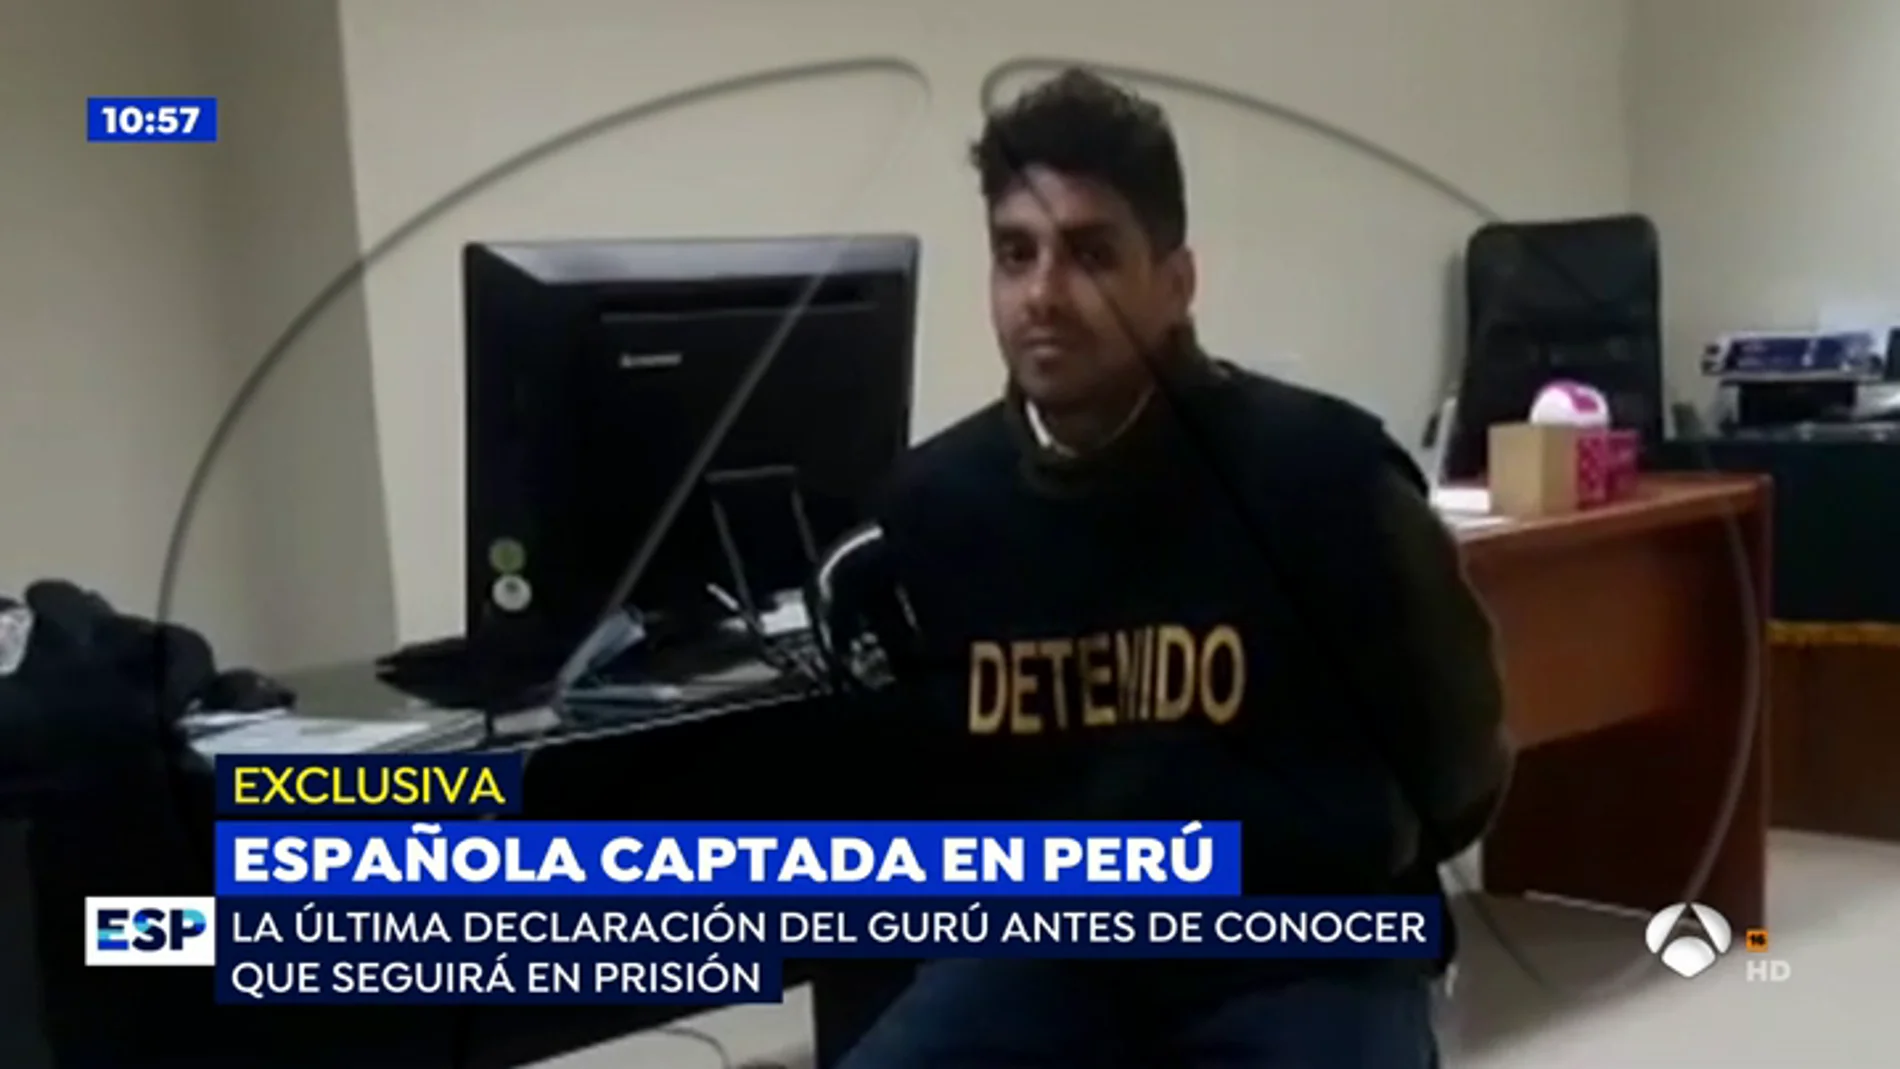 EXCLUSIVA: La chulería del gurú que captó a Patricia Aguilar en una secta: "No me hagan tortura psicológica"